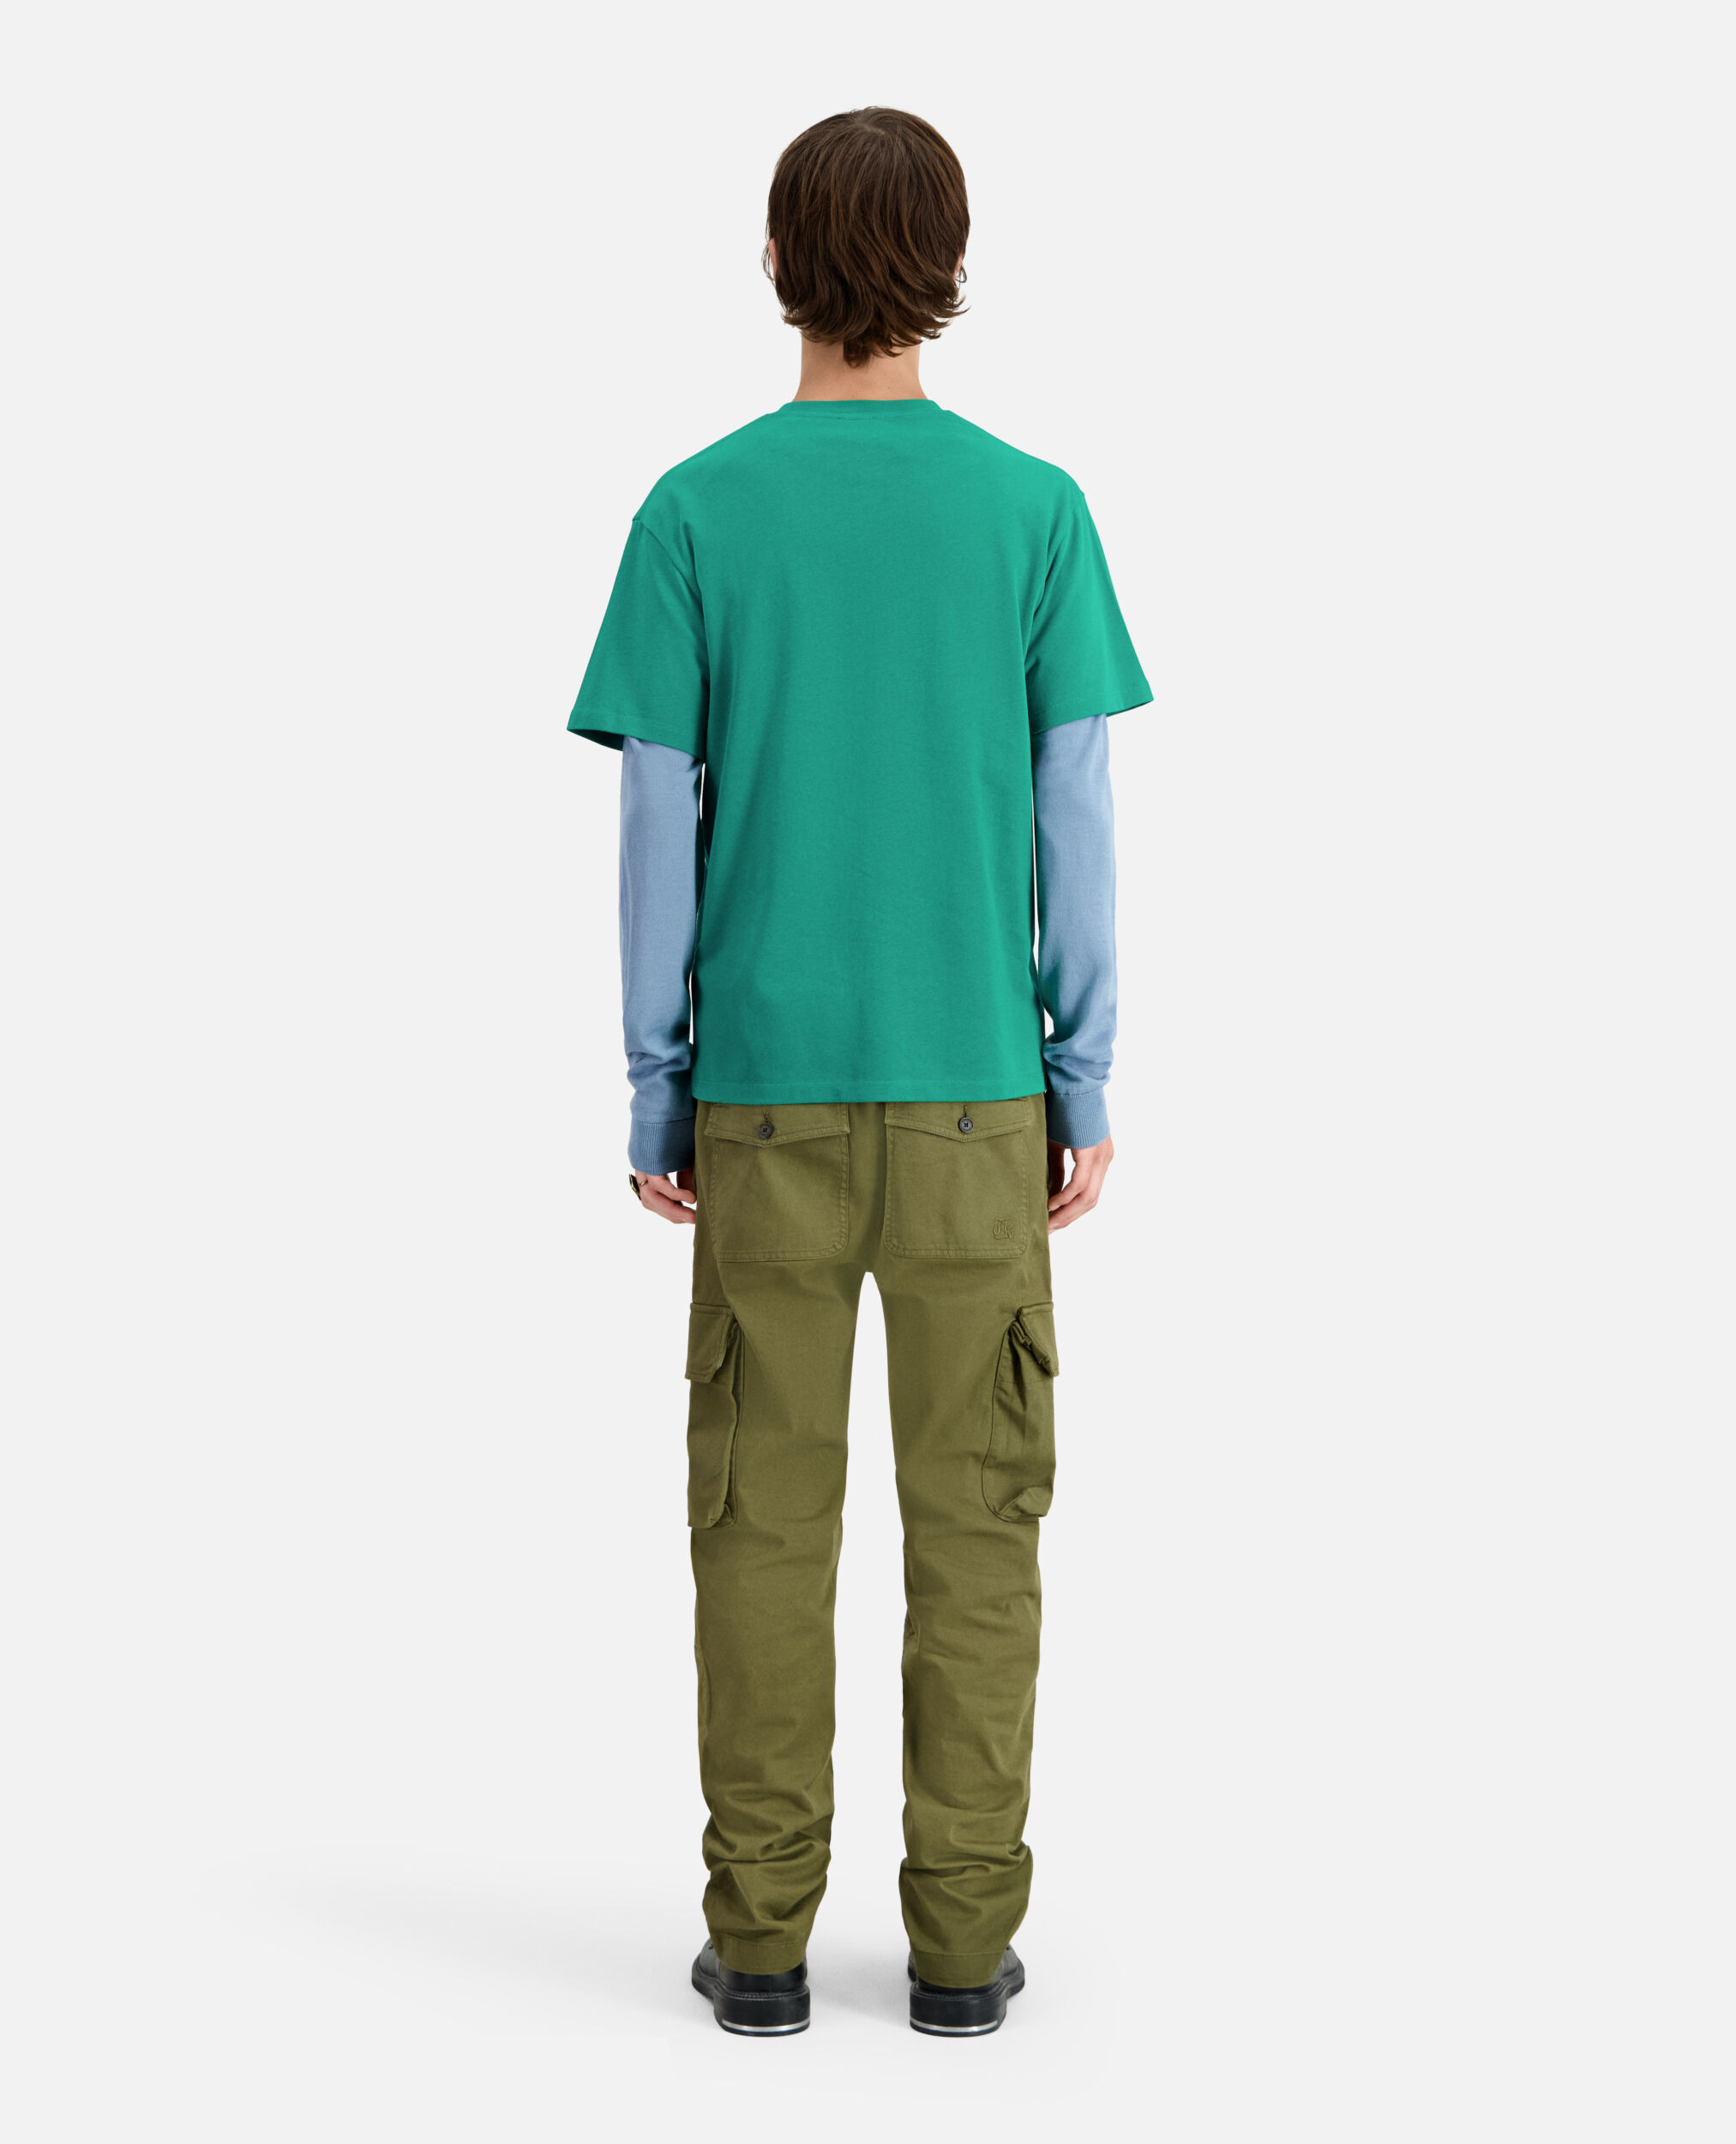 T-shirt Homme vert avec logo, FOREST, hi-res image number null